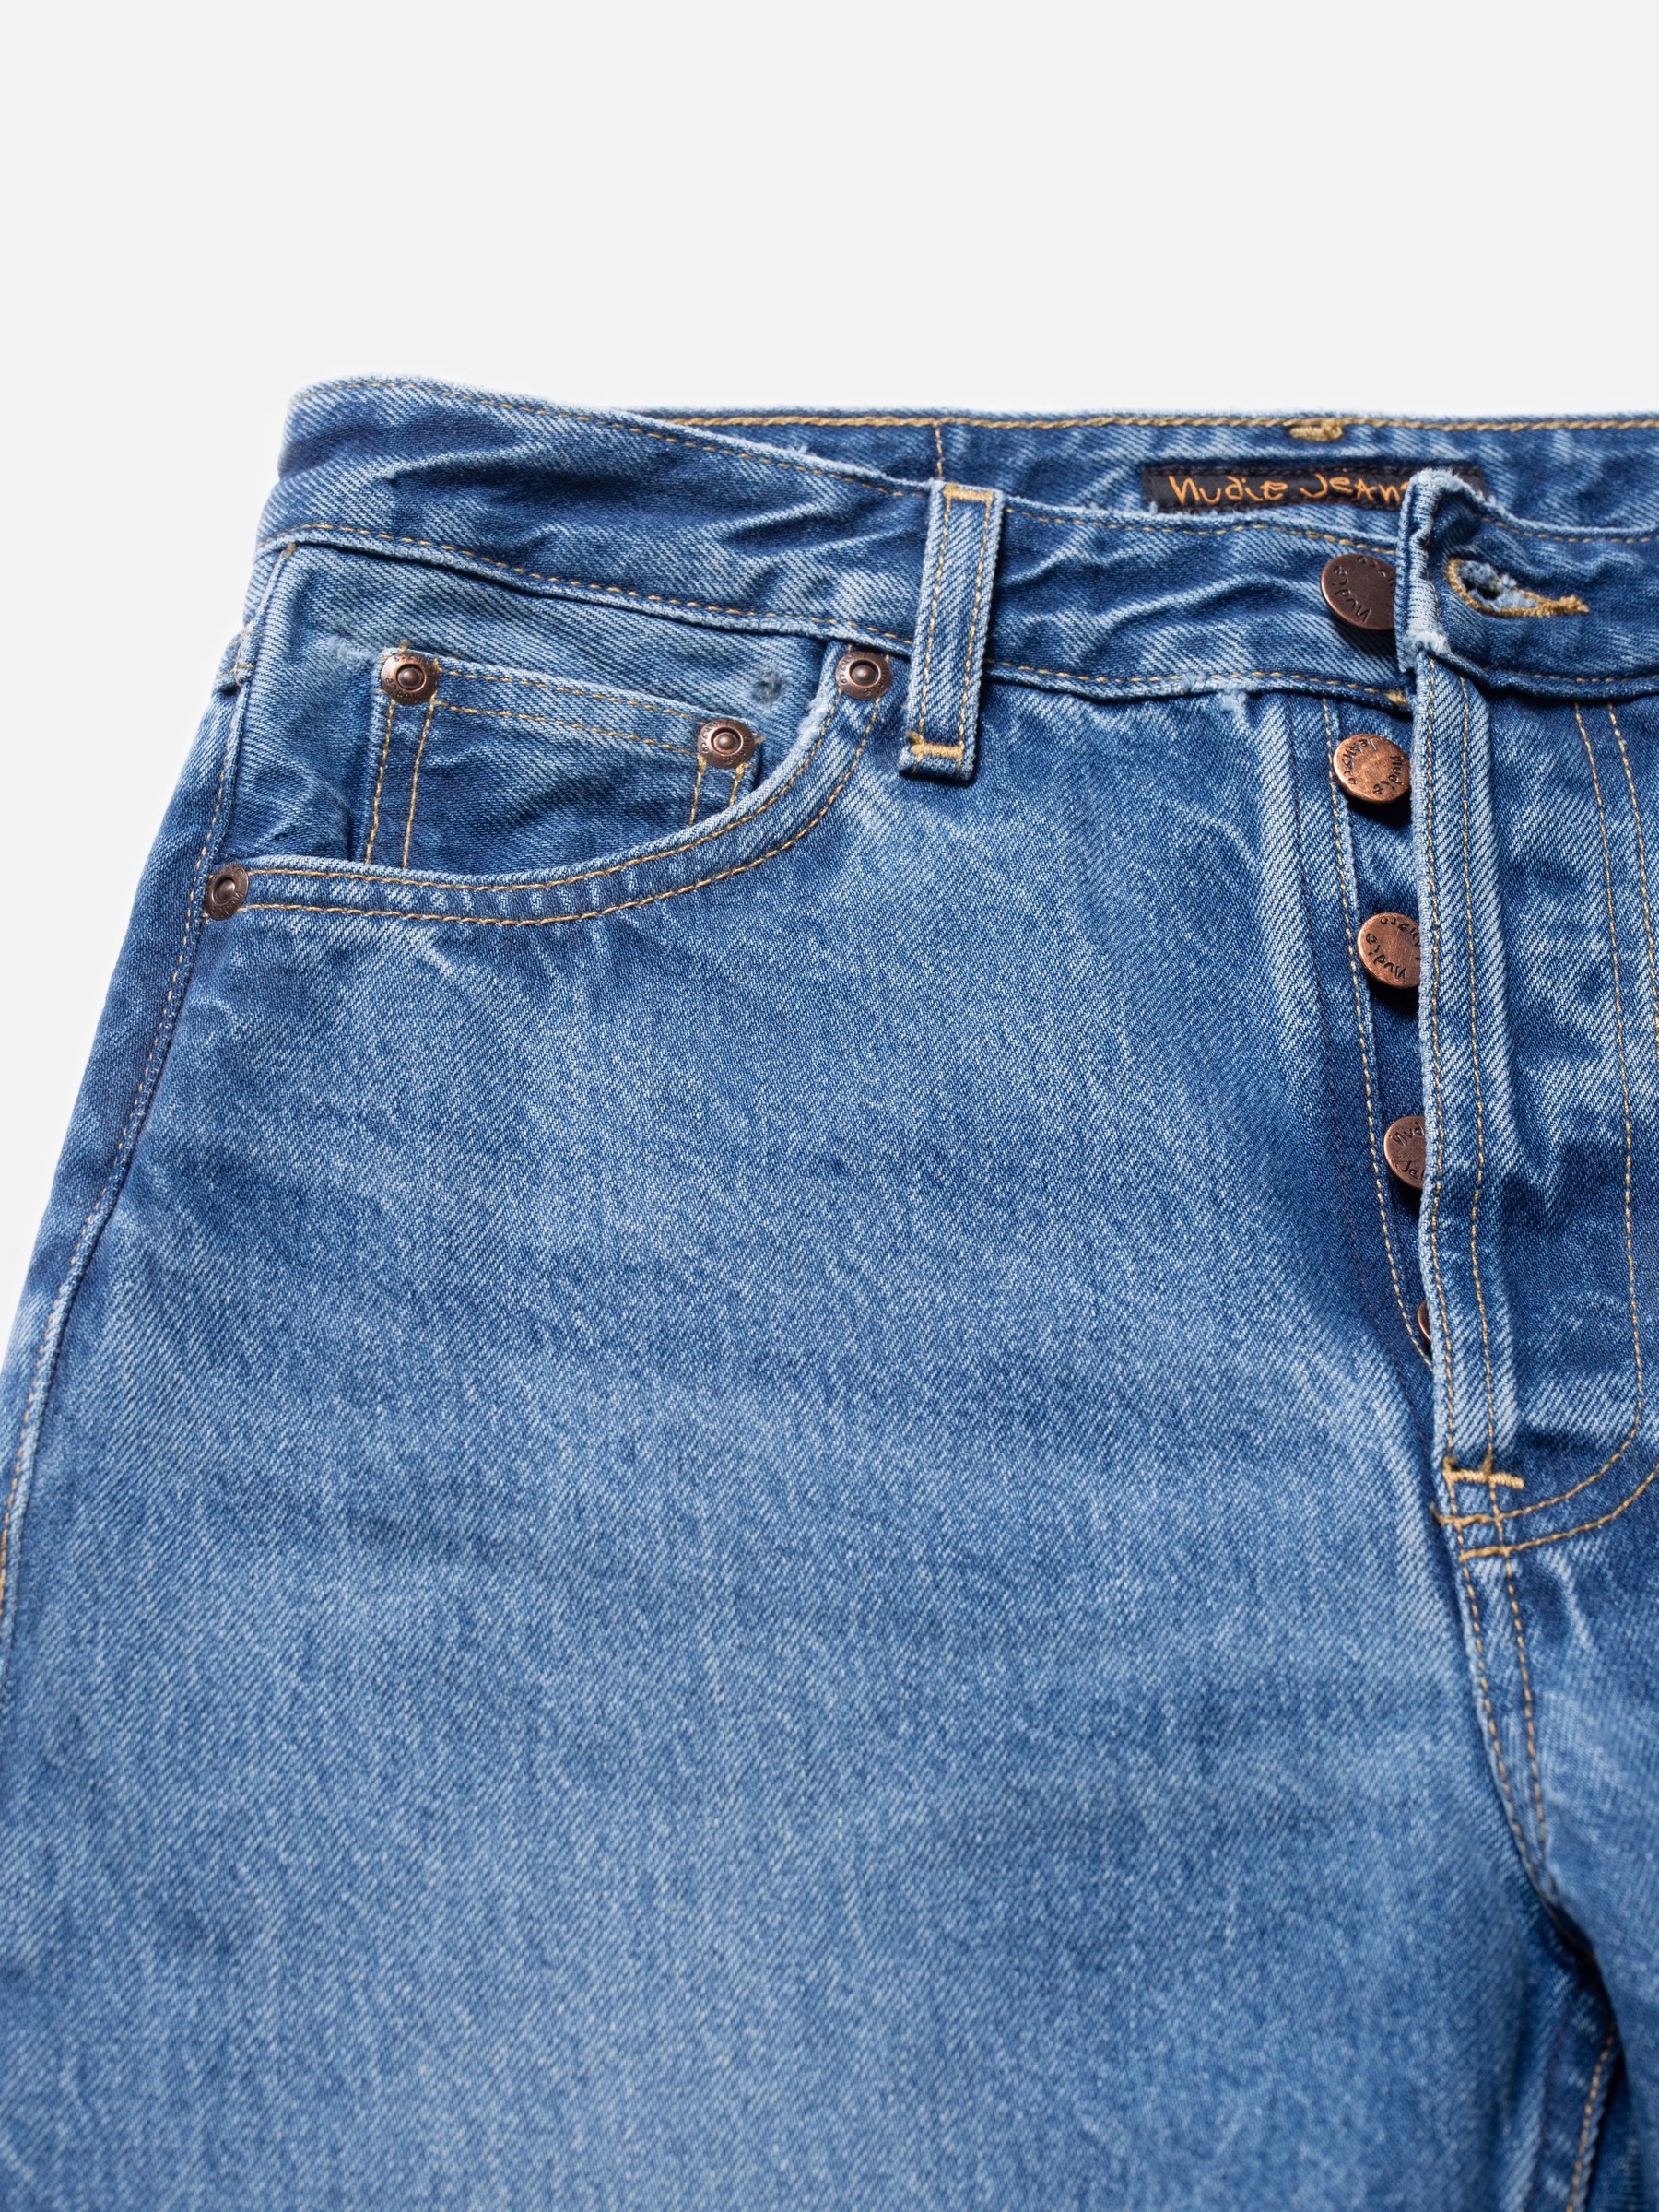 Jeans-Shorts Maud - Nostalgic Blue